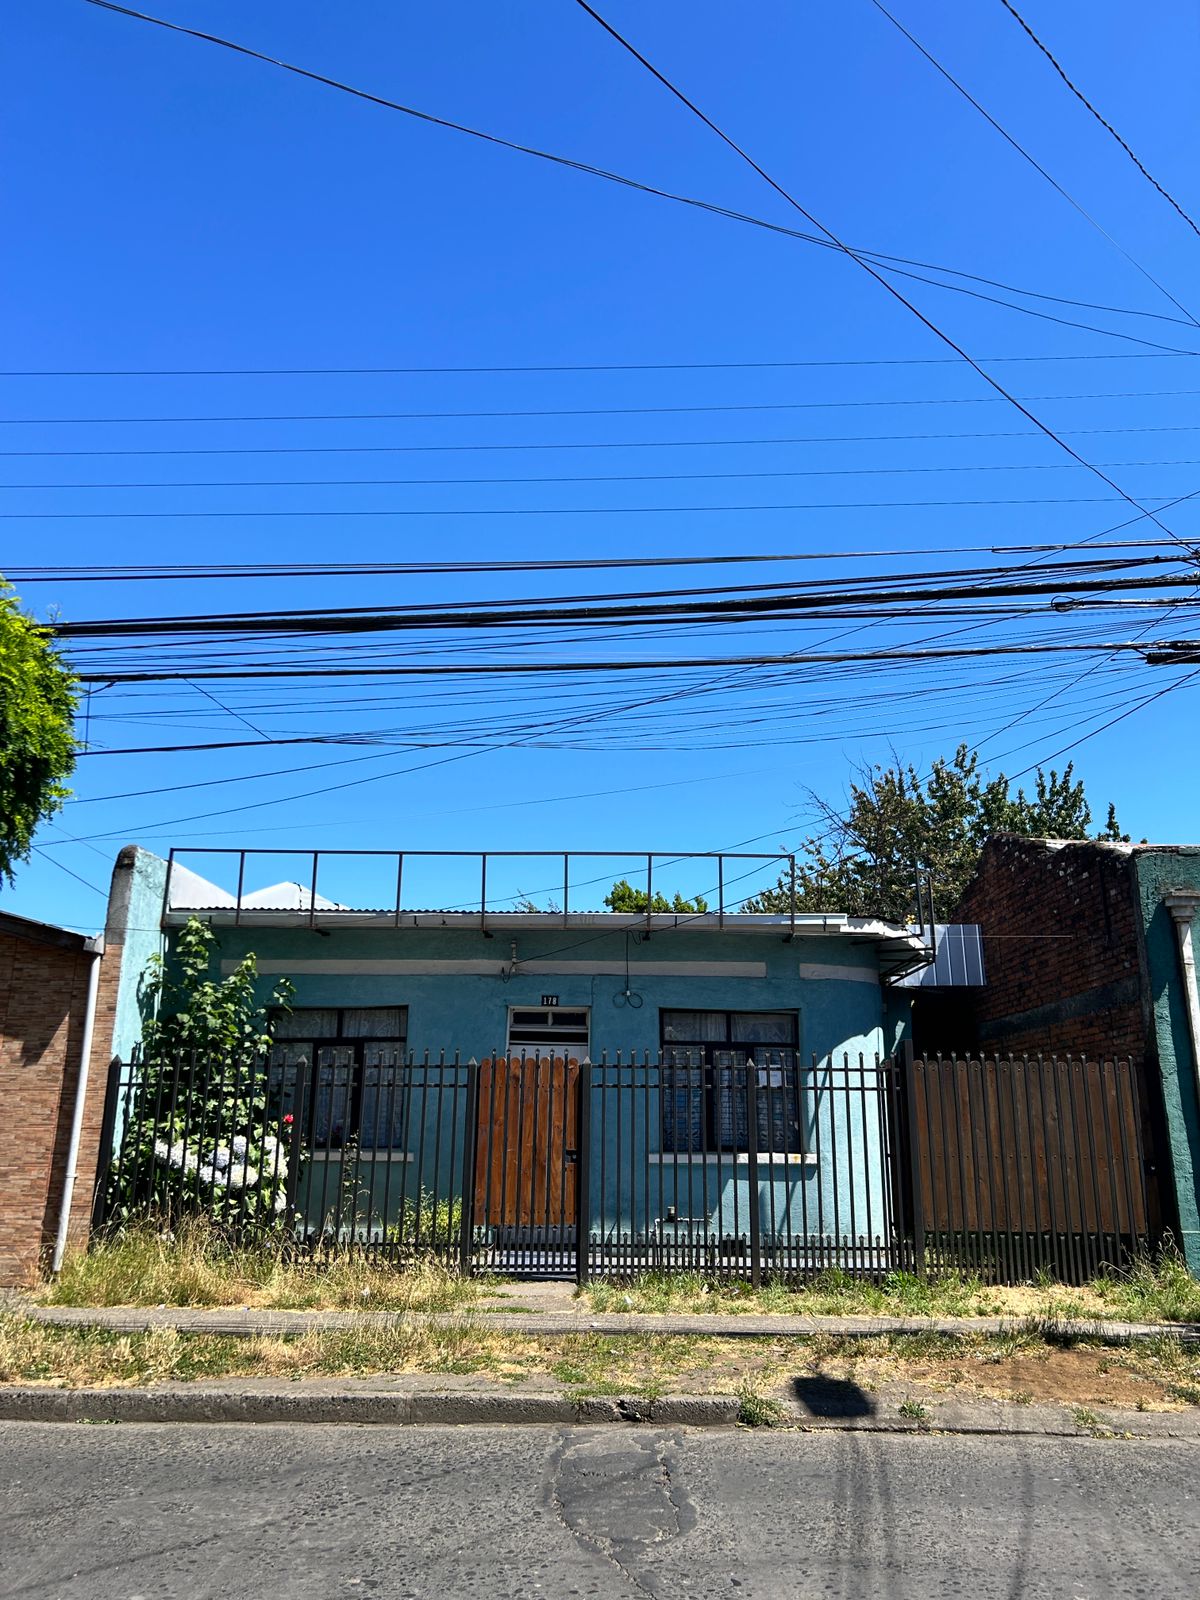 Venta de Amplia casa Habitacion en Sector Hospital, muy bien ubicada, Temuco.